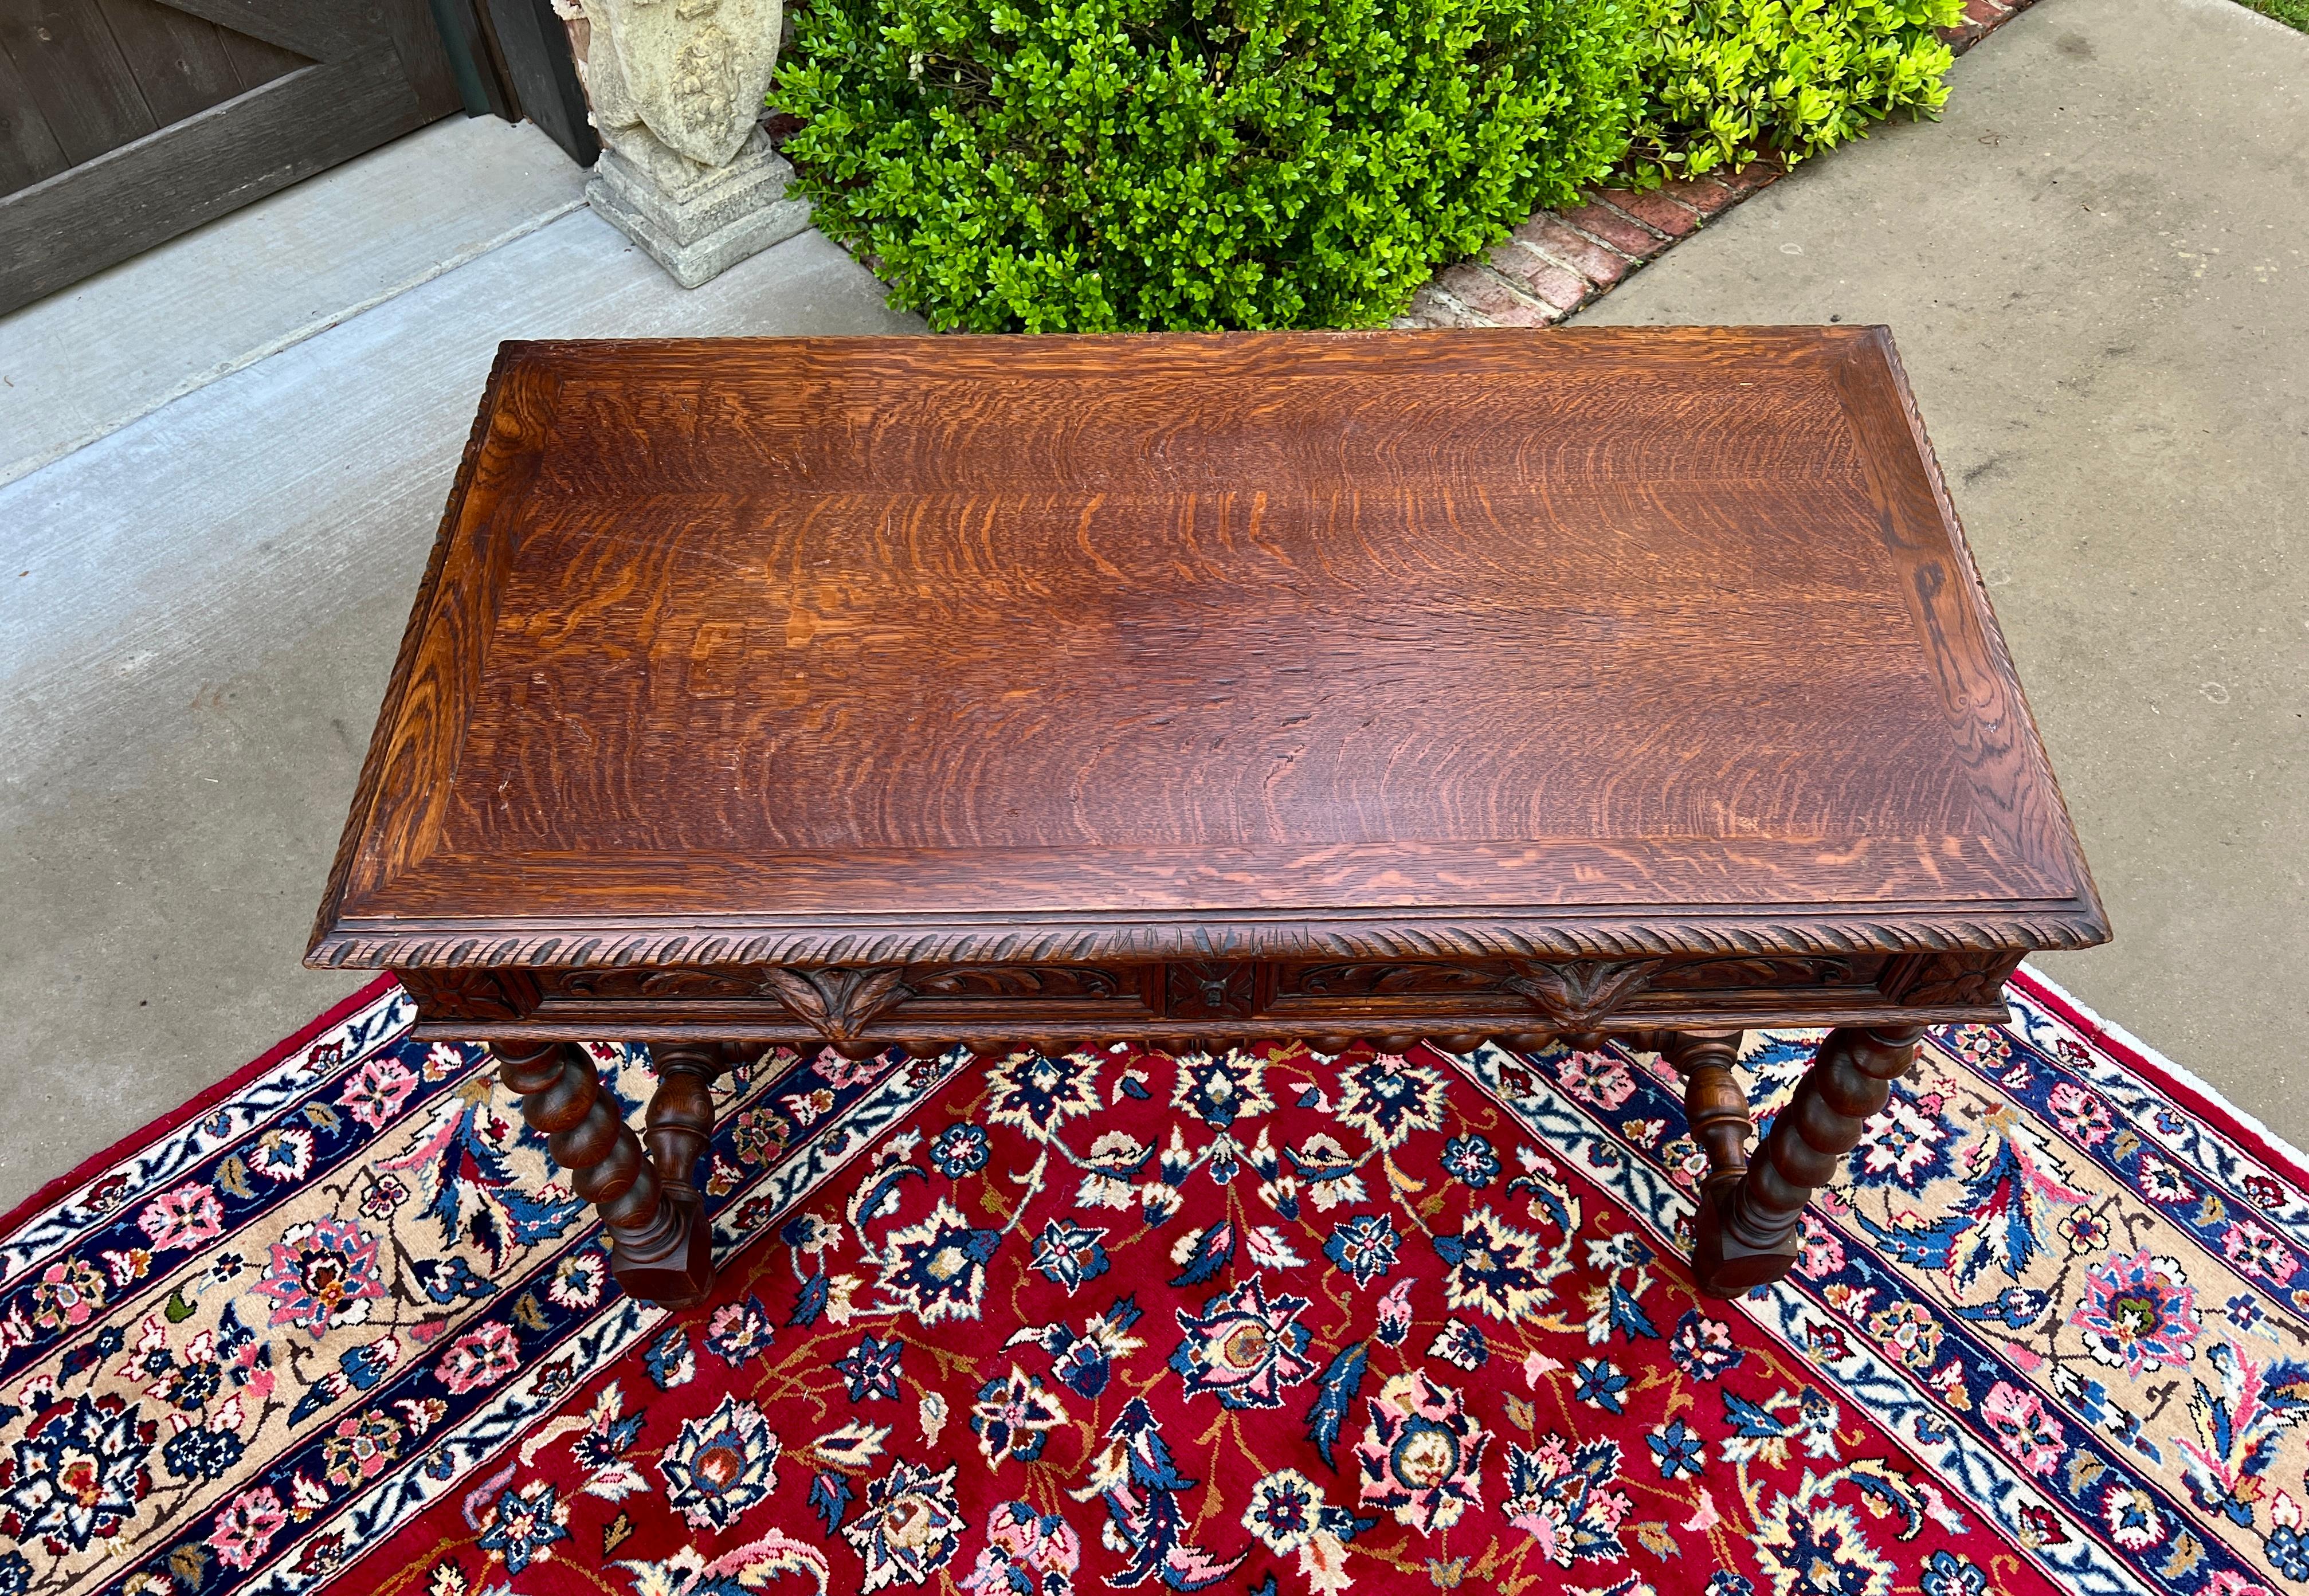 Antique French Desk Table Renaissance Revival Barley Twist Carved Tiger Oak 19C For Sale 1